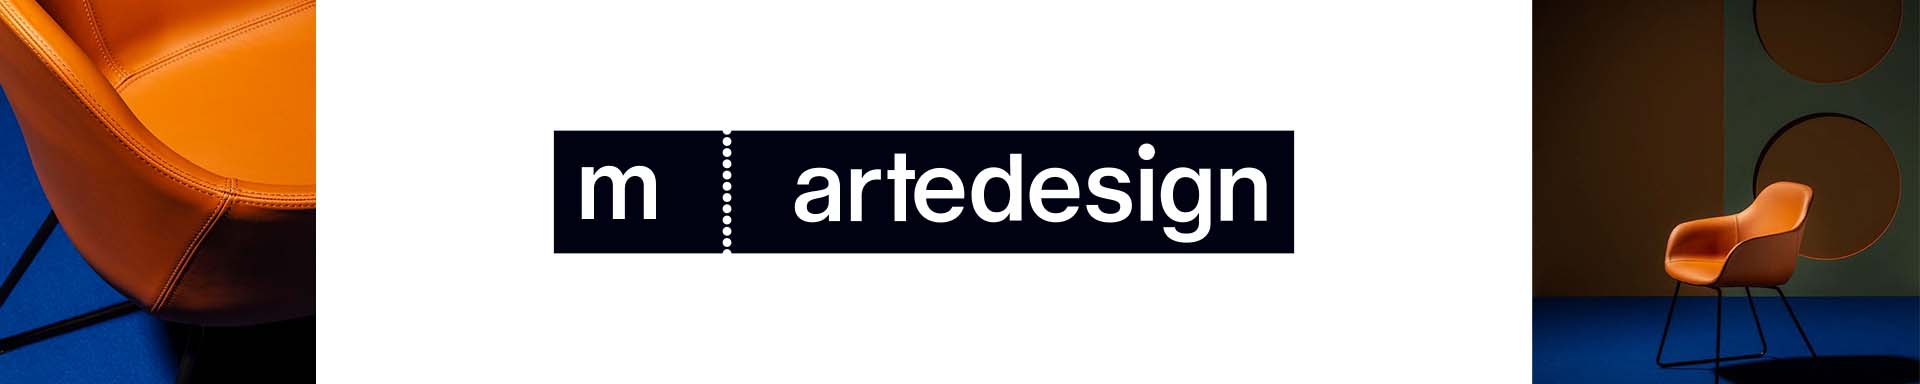 m. artedesign 